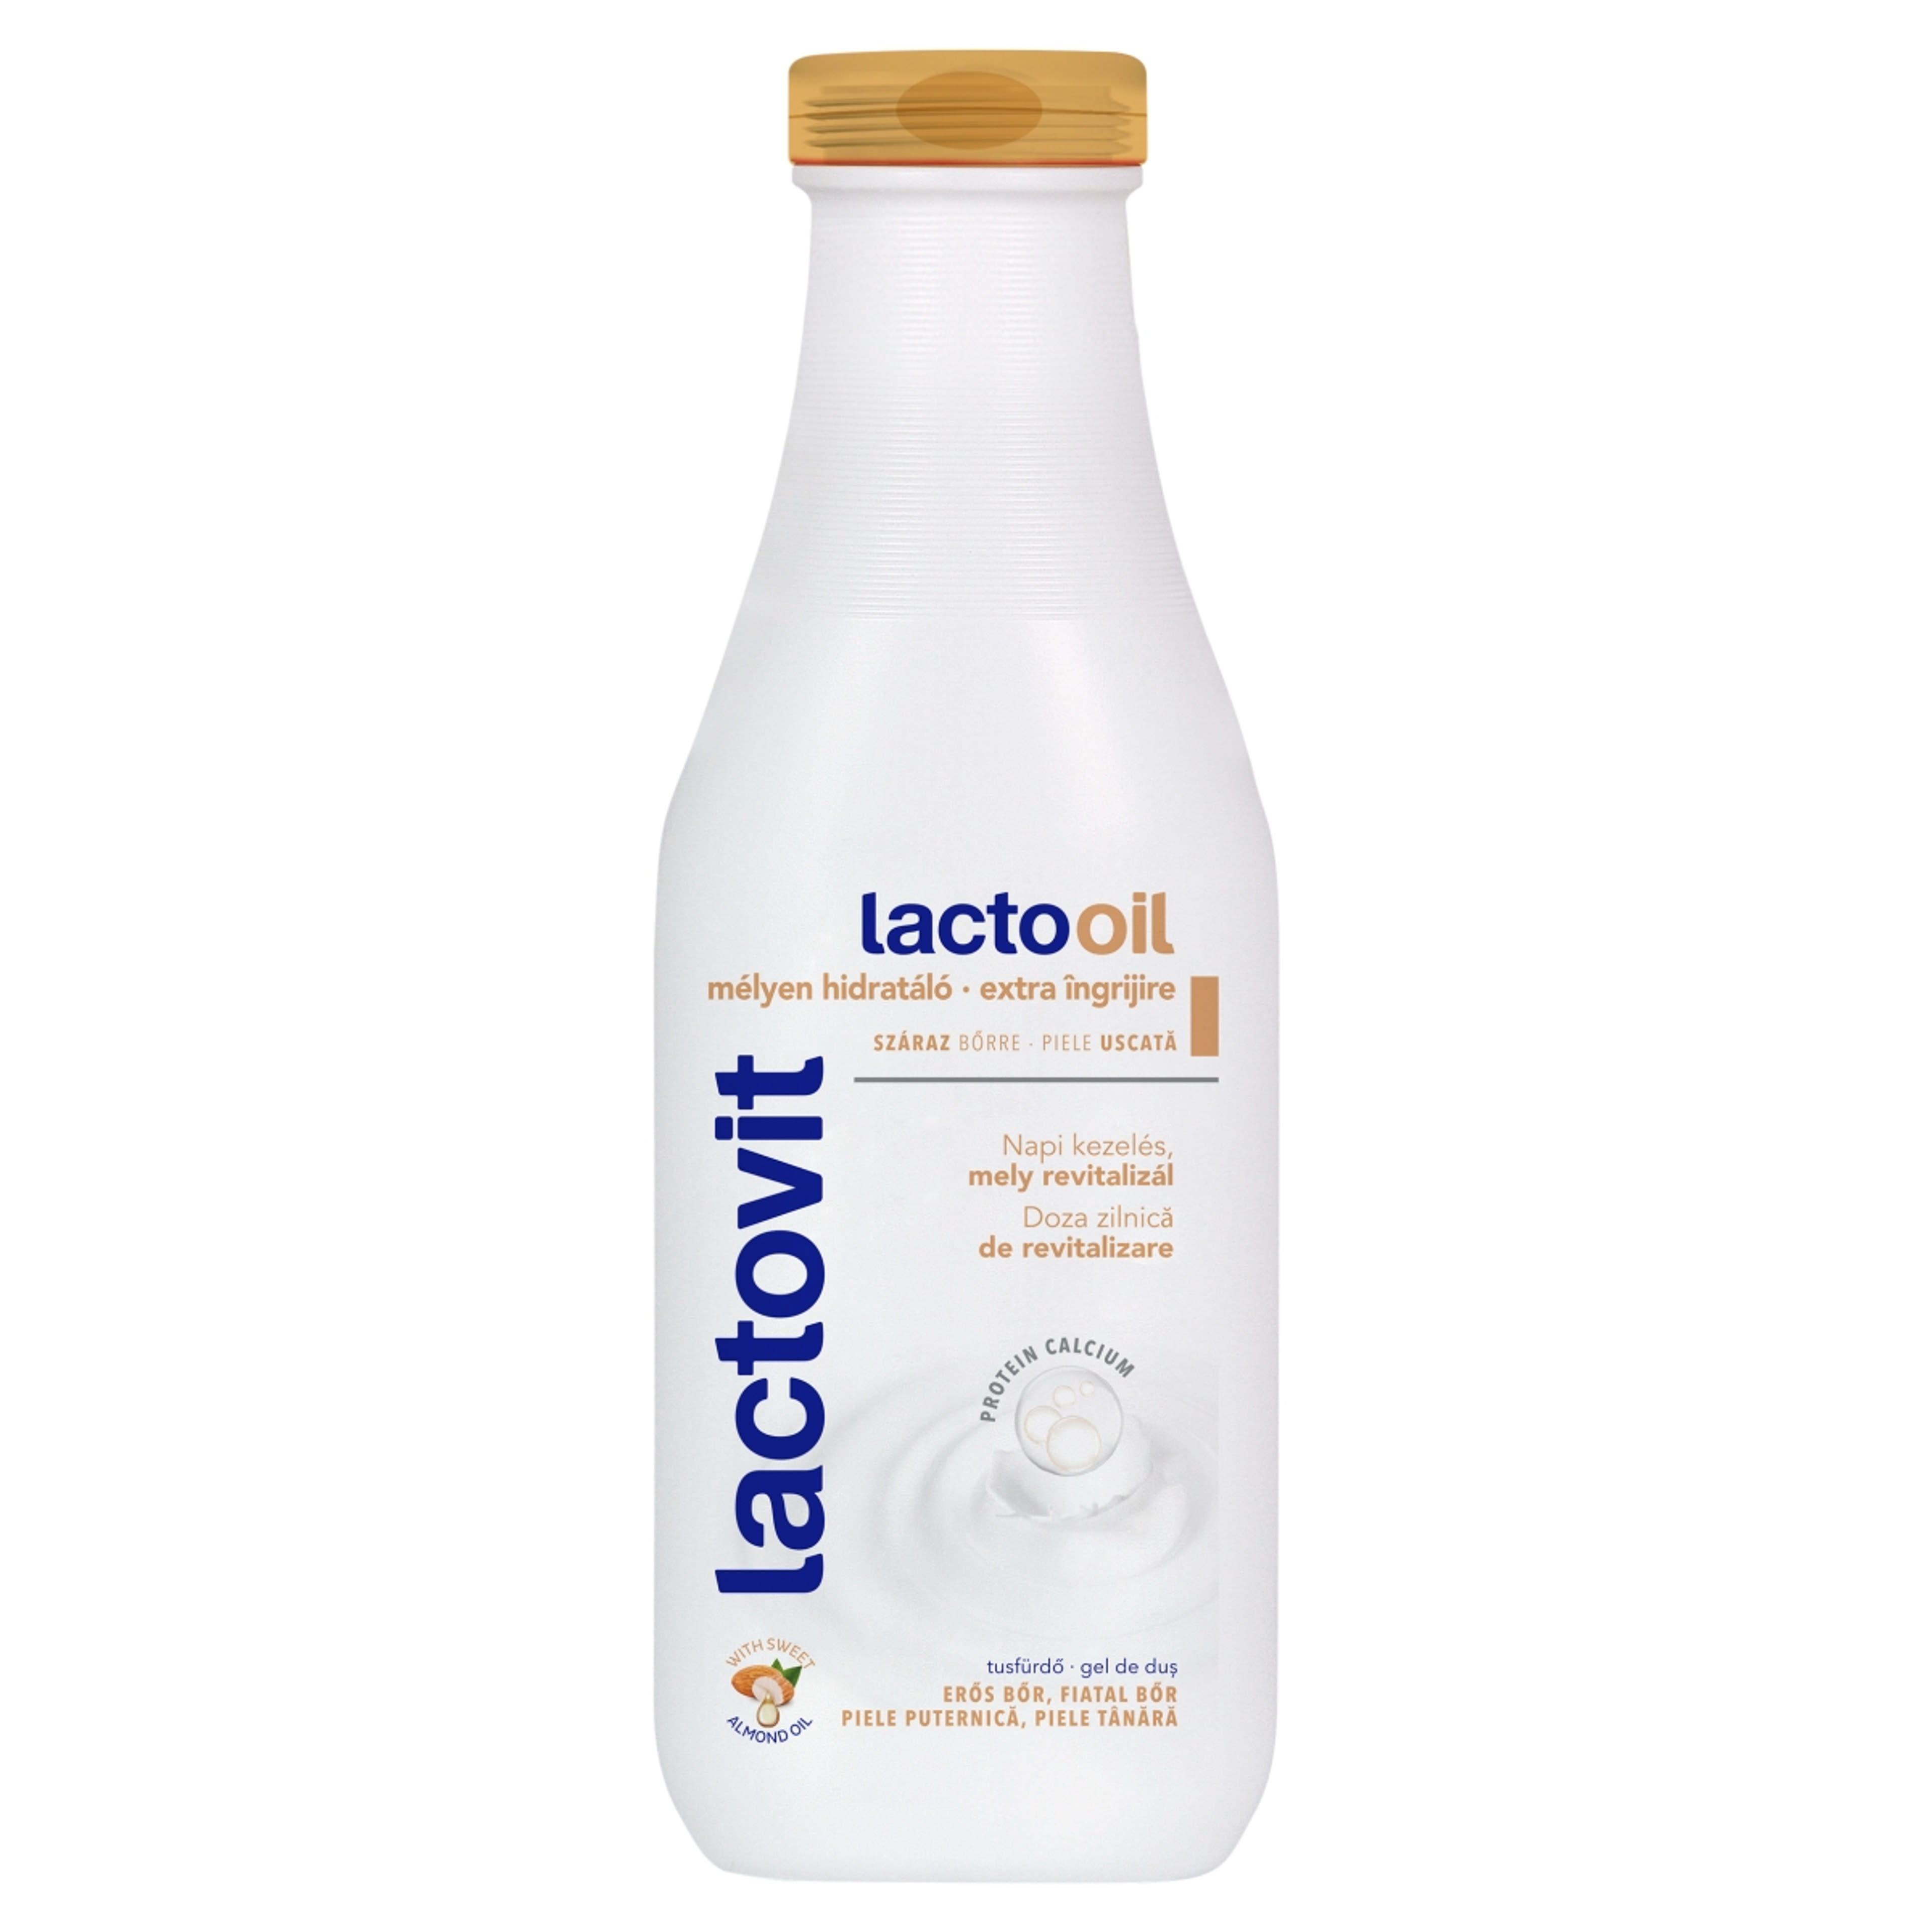 Lactovit tusfürdő Lactooil - 600 ml-2